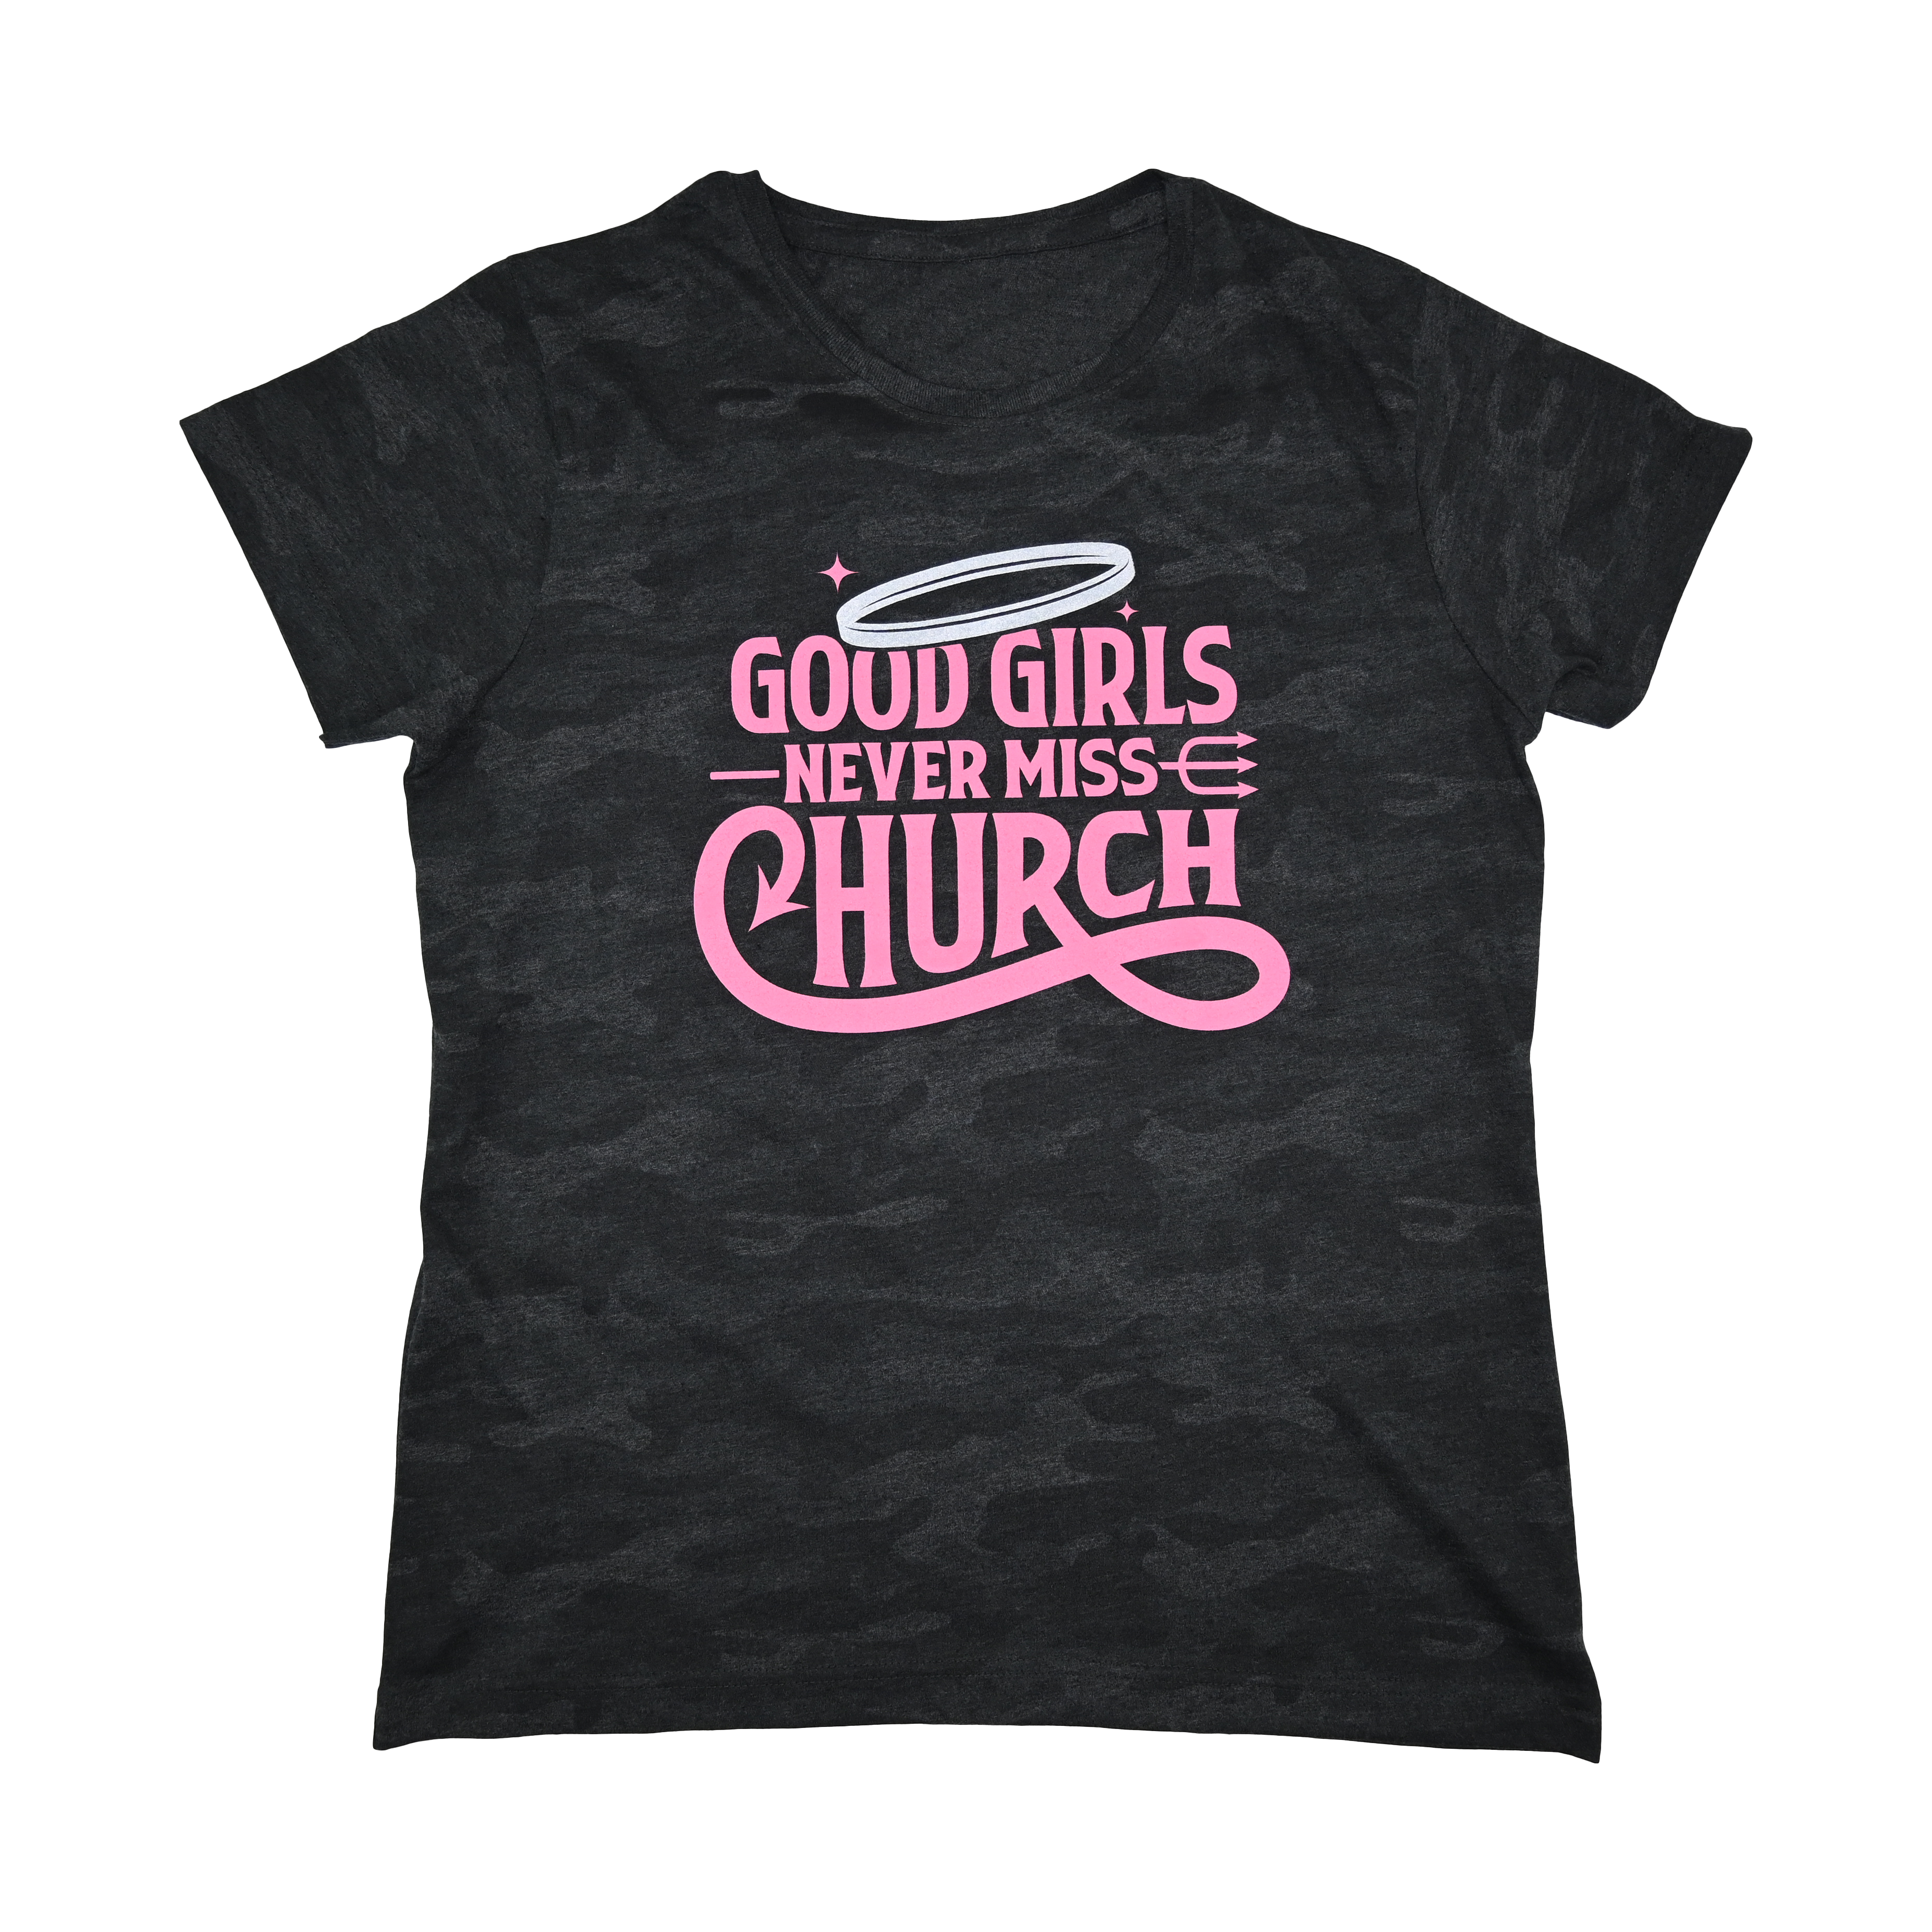 Good Girls Never Miss Church - Black Camo T-Shirt